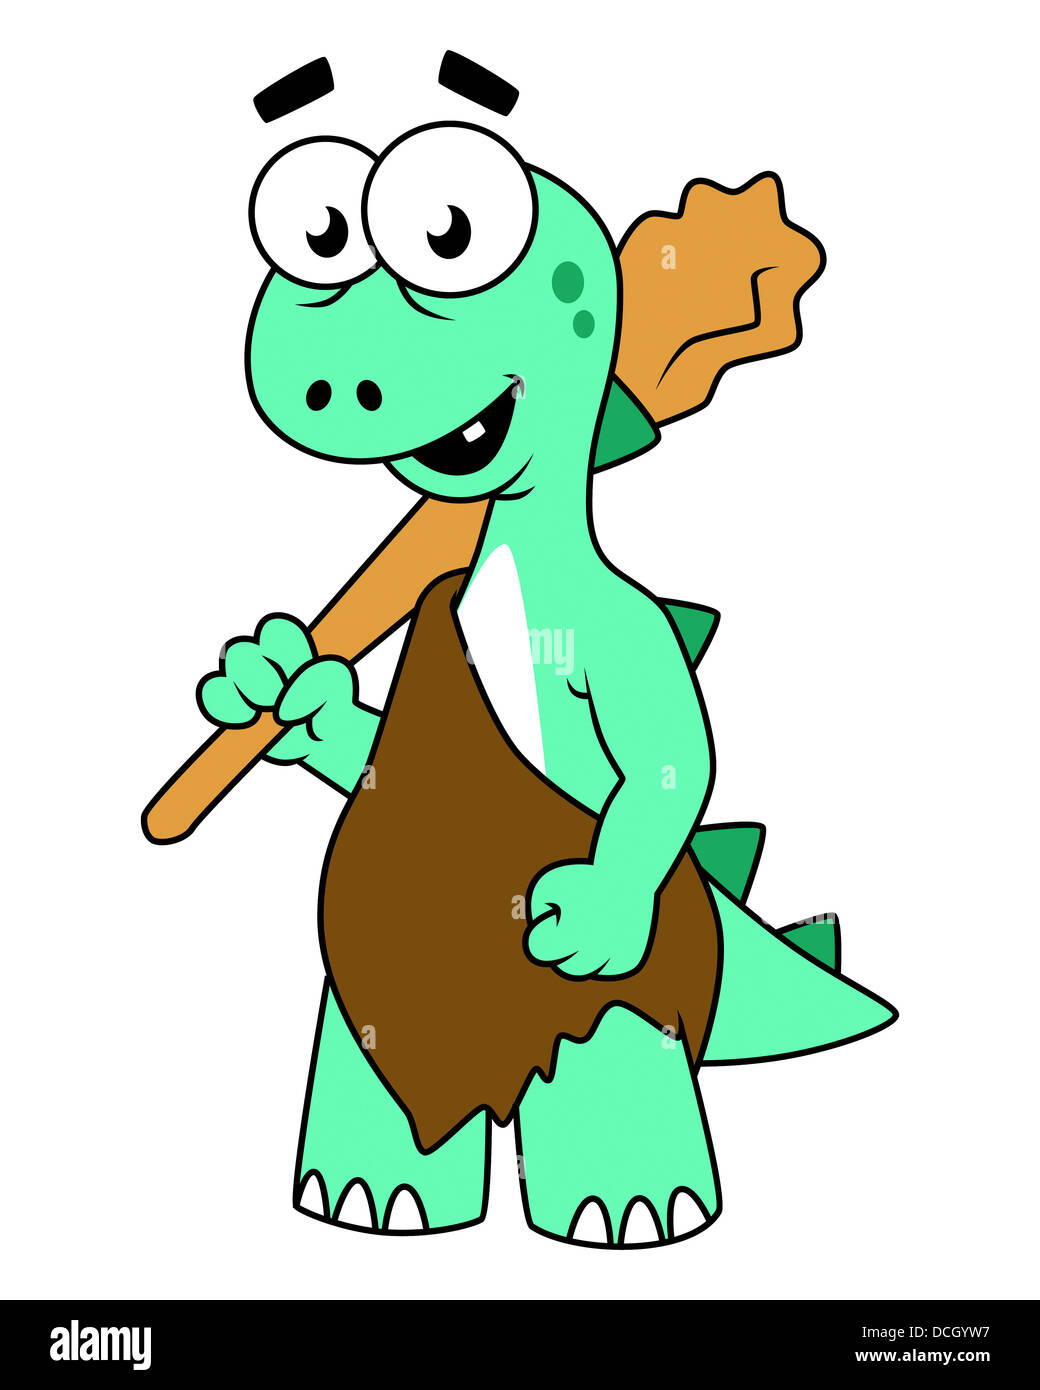 Cartoon illustration of a Tyrannosaurus Rex caveman. Stock Photo